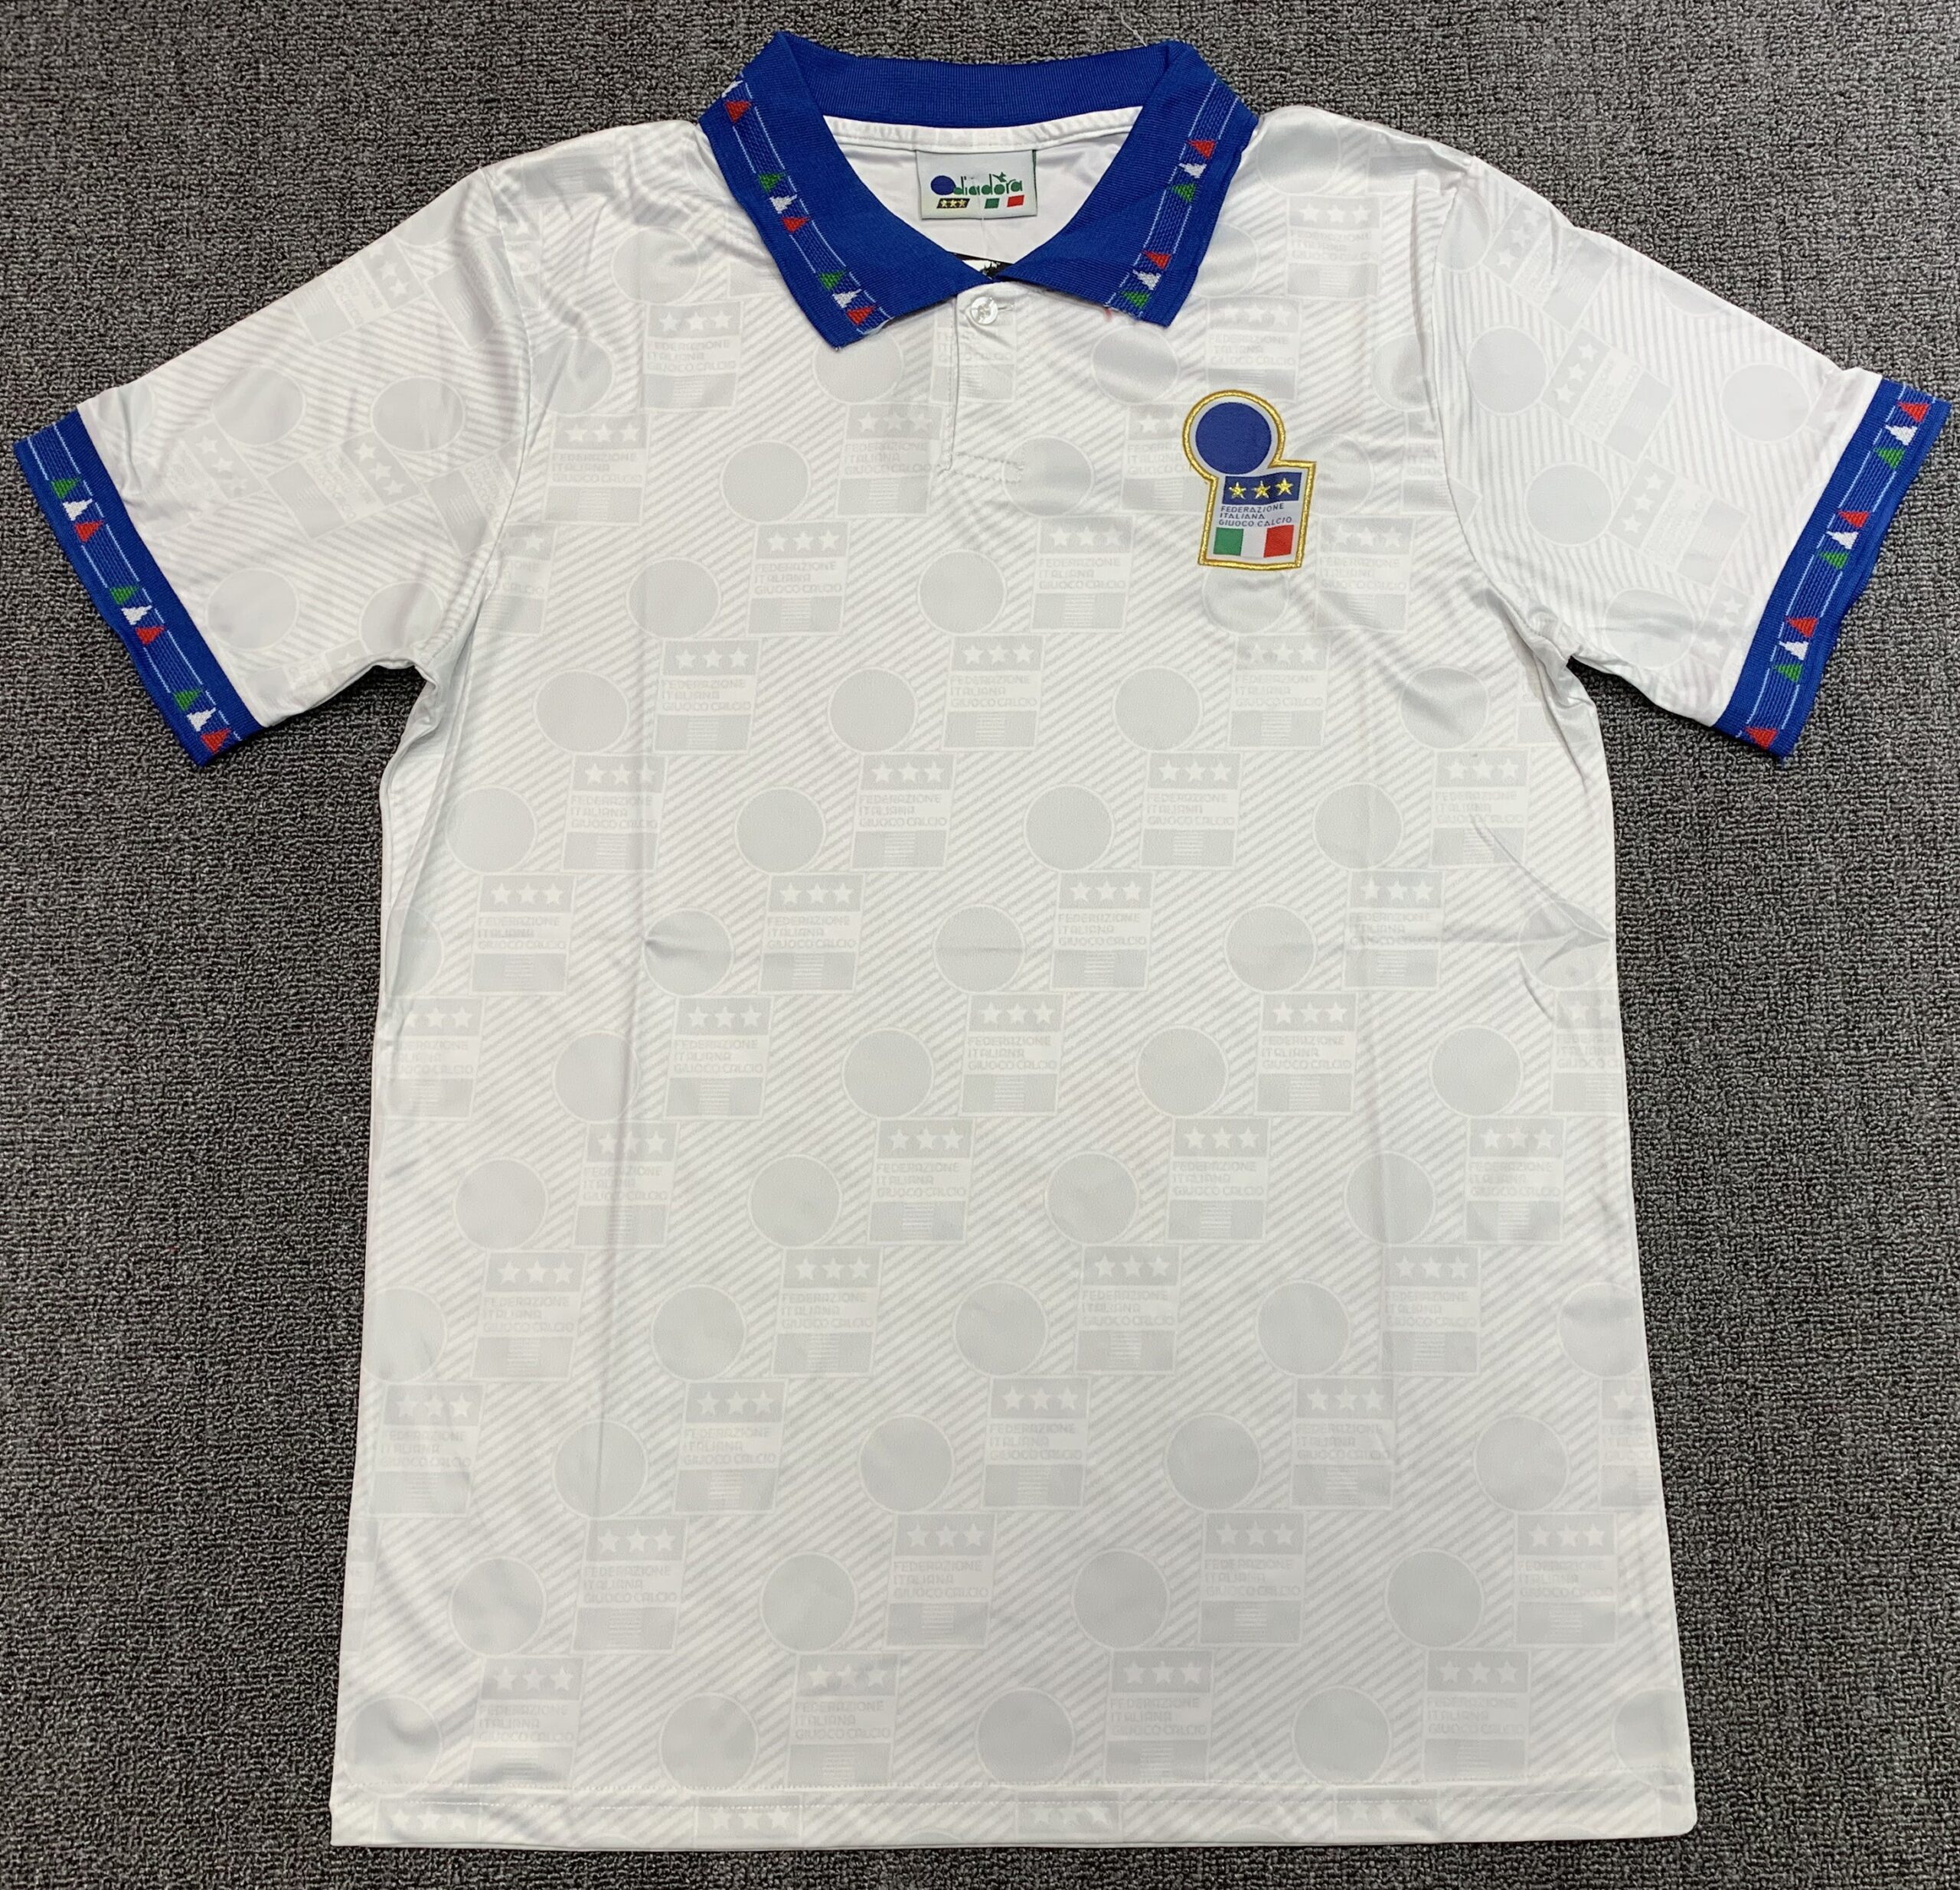 1994 italy football shirt